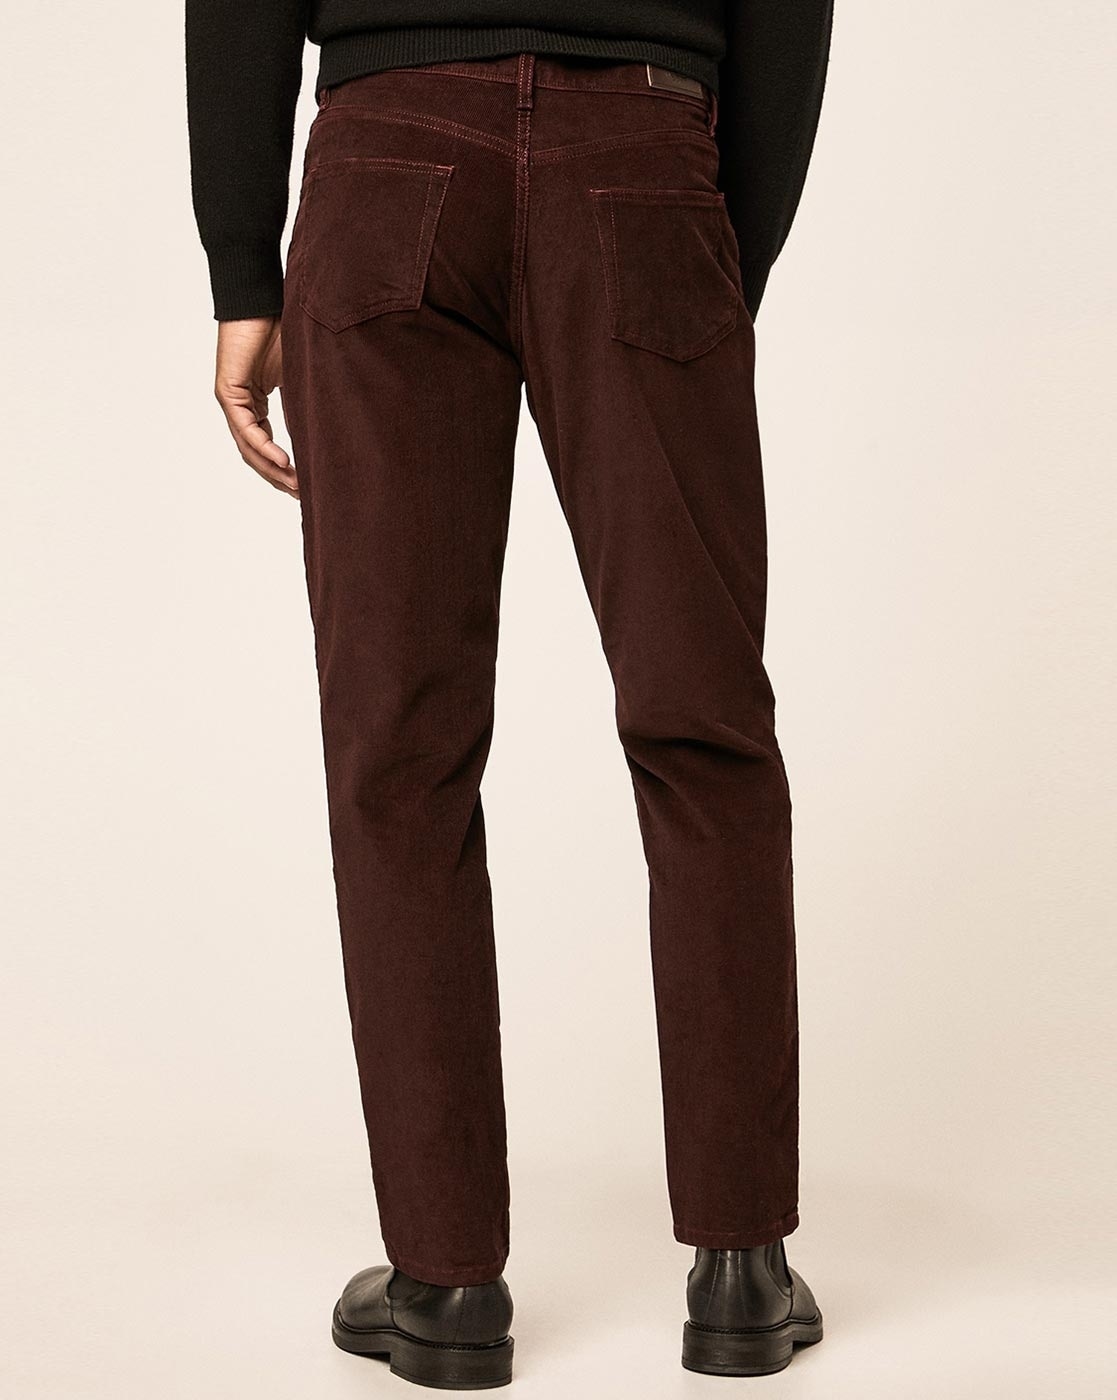 John Lewis Corduroy Regular Fit Trousers, Taupe at John Lewis & Partners